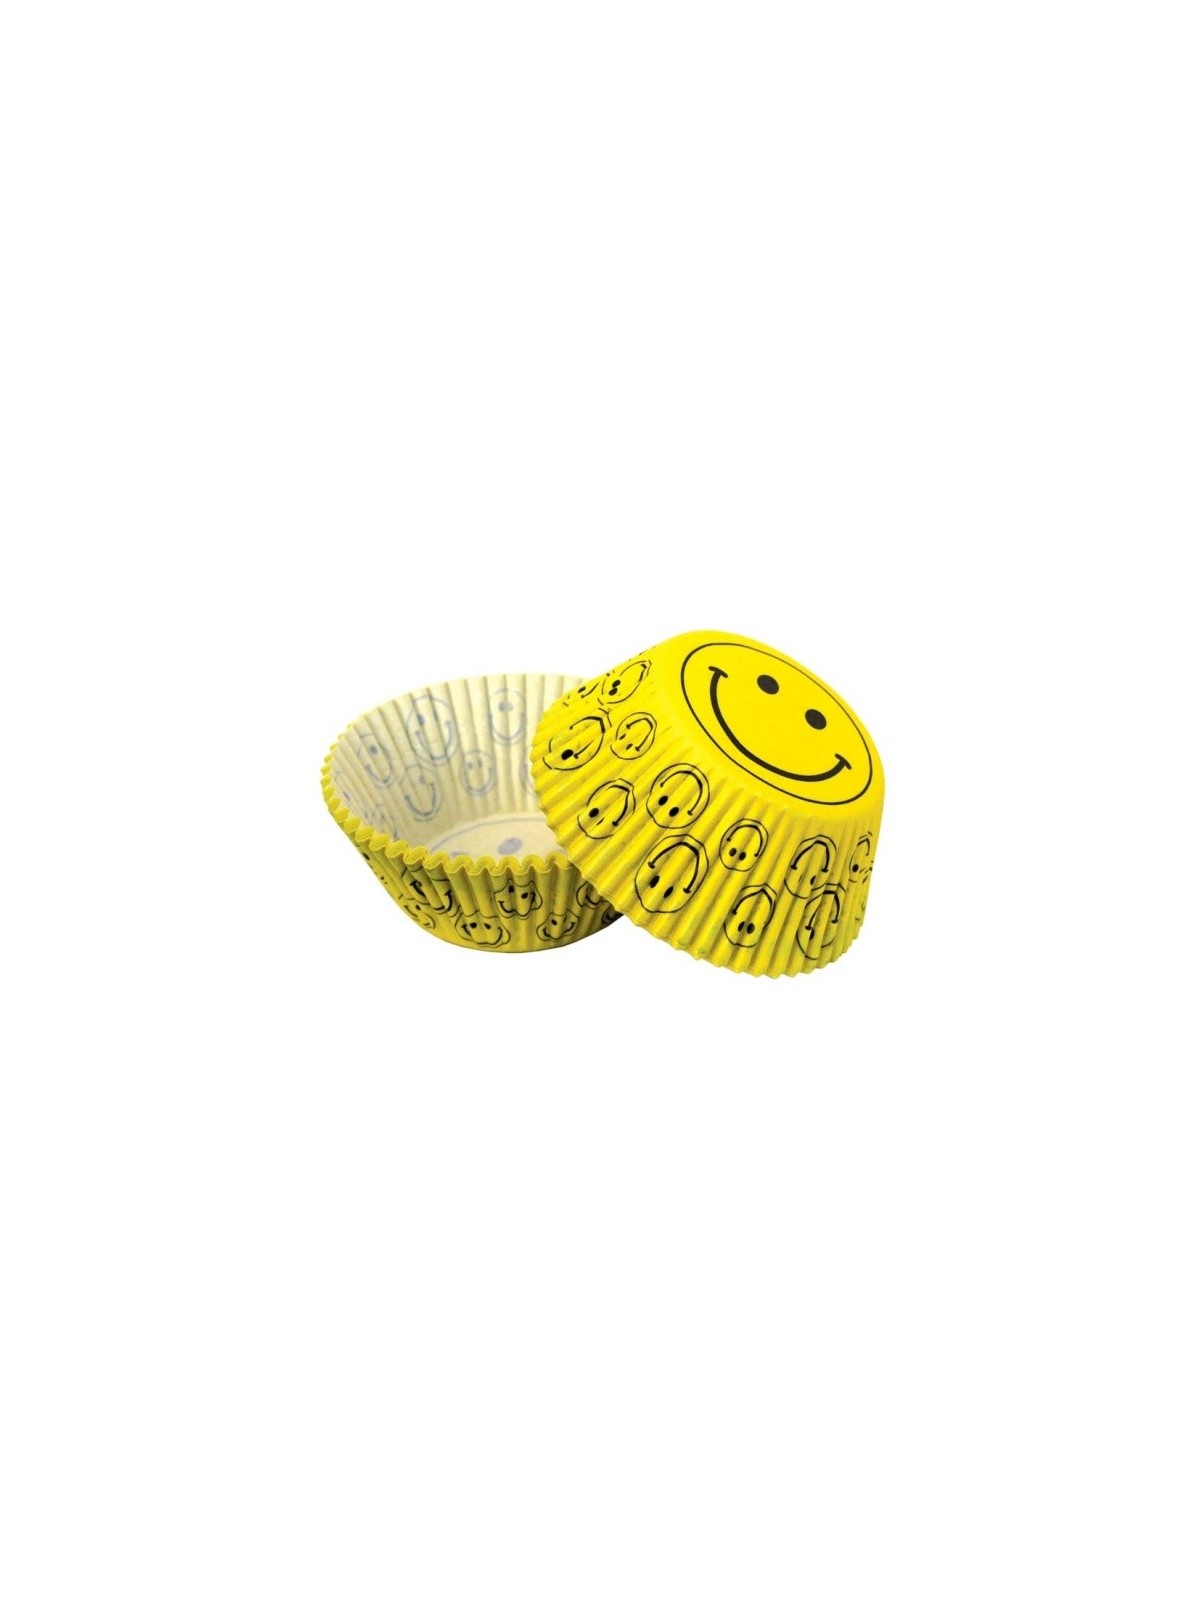 Cukrářské košíčky - smile žluté - 50ks